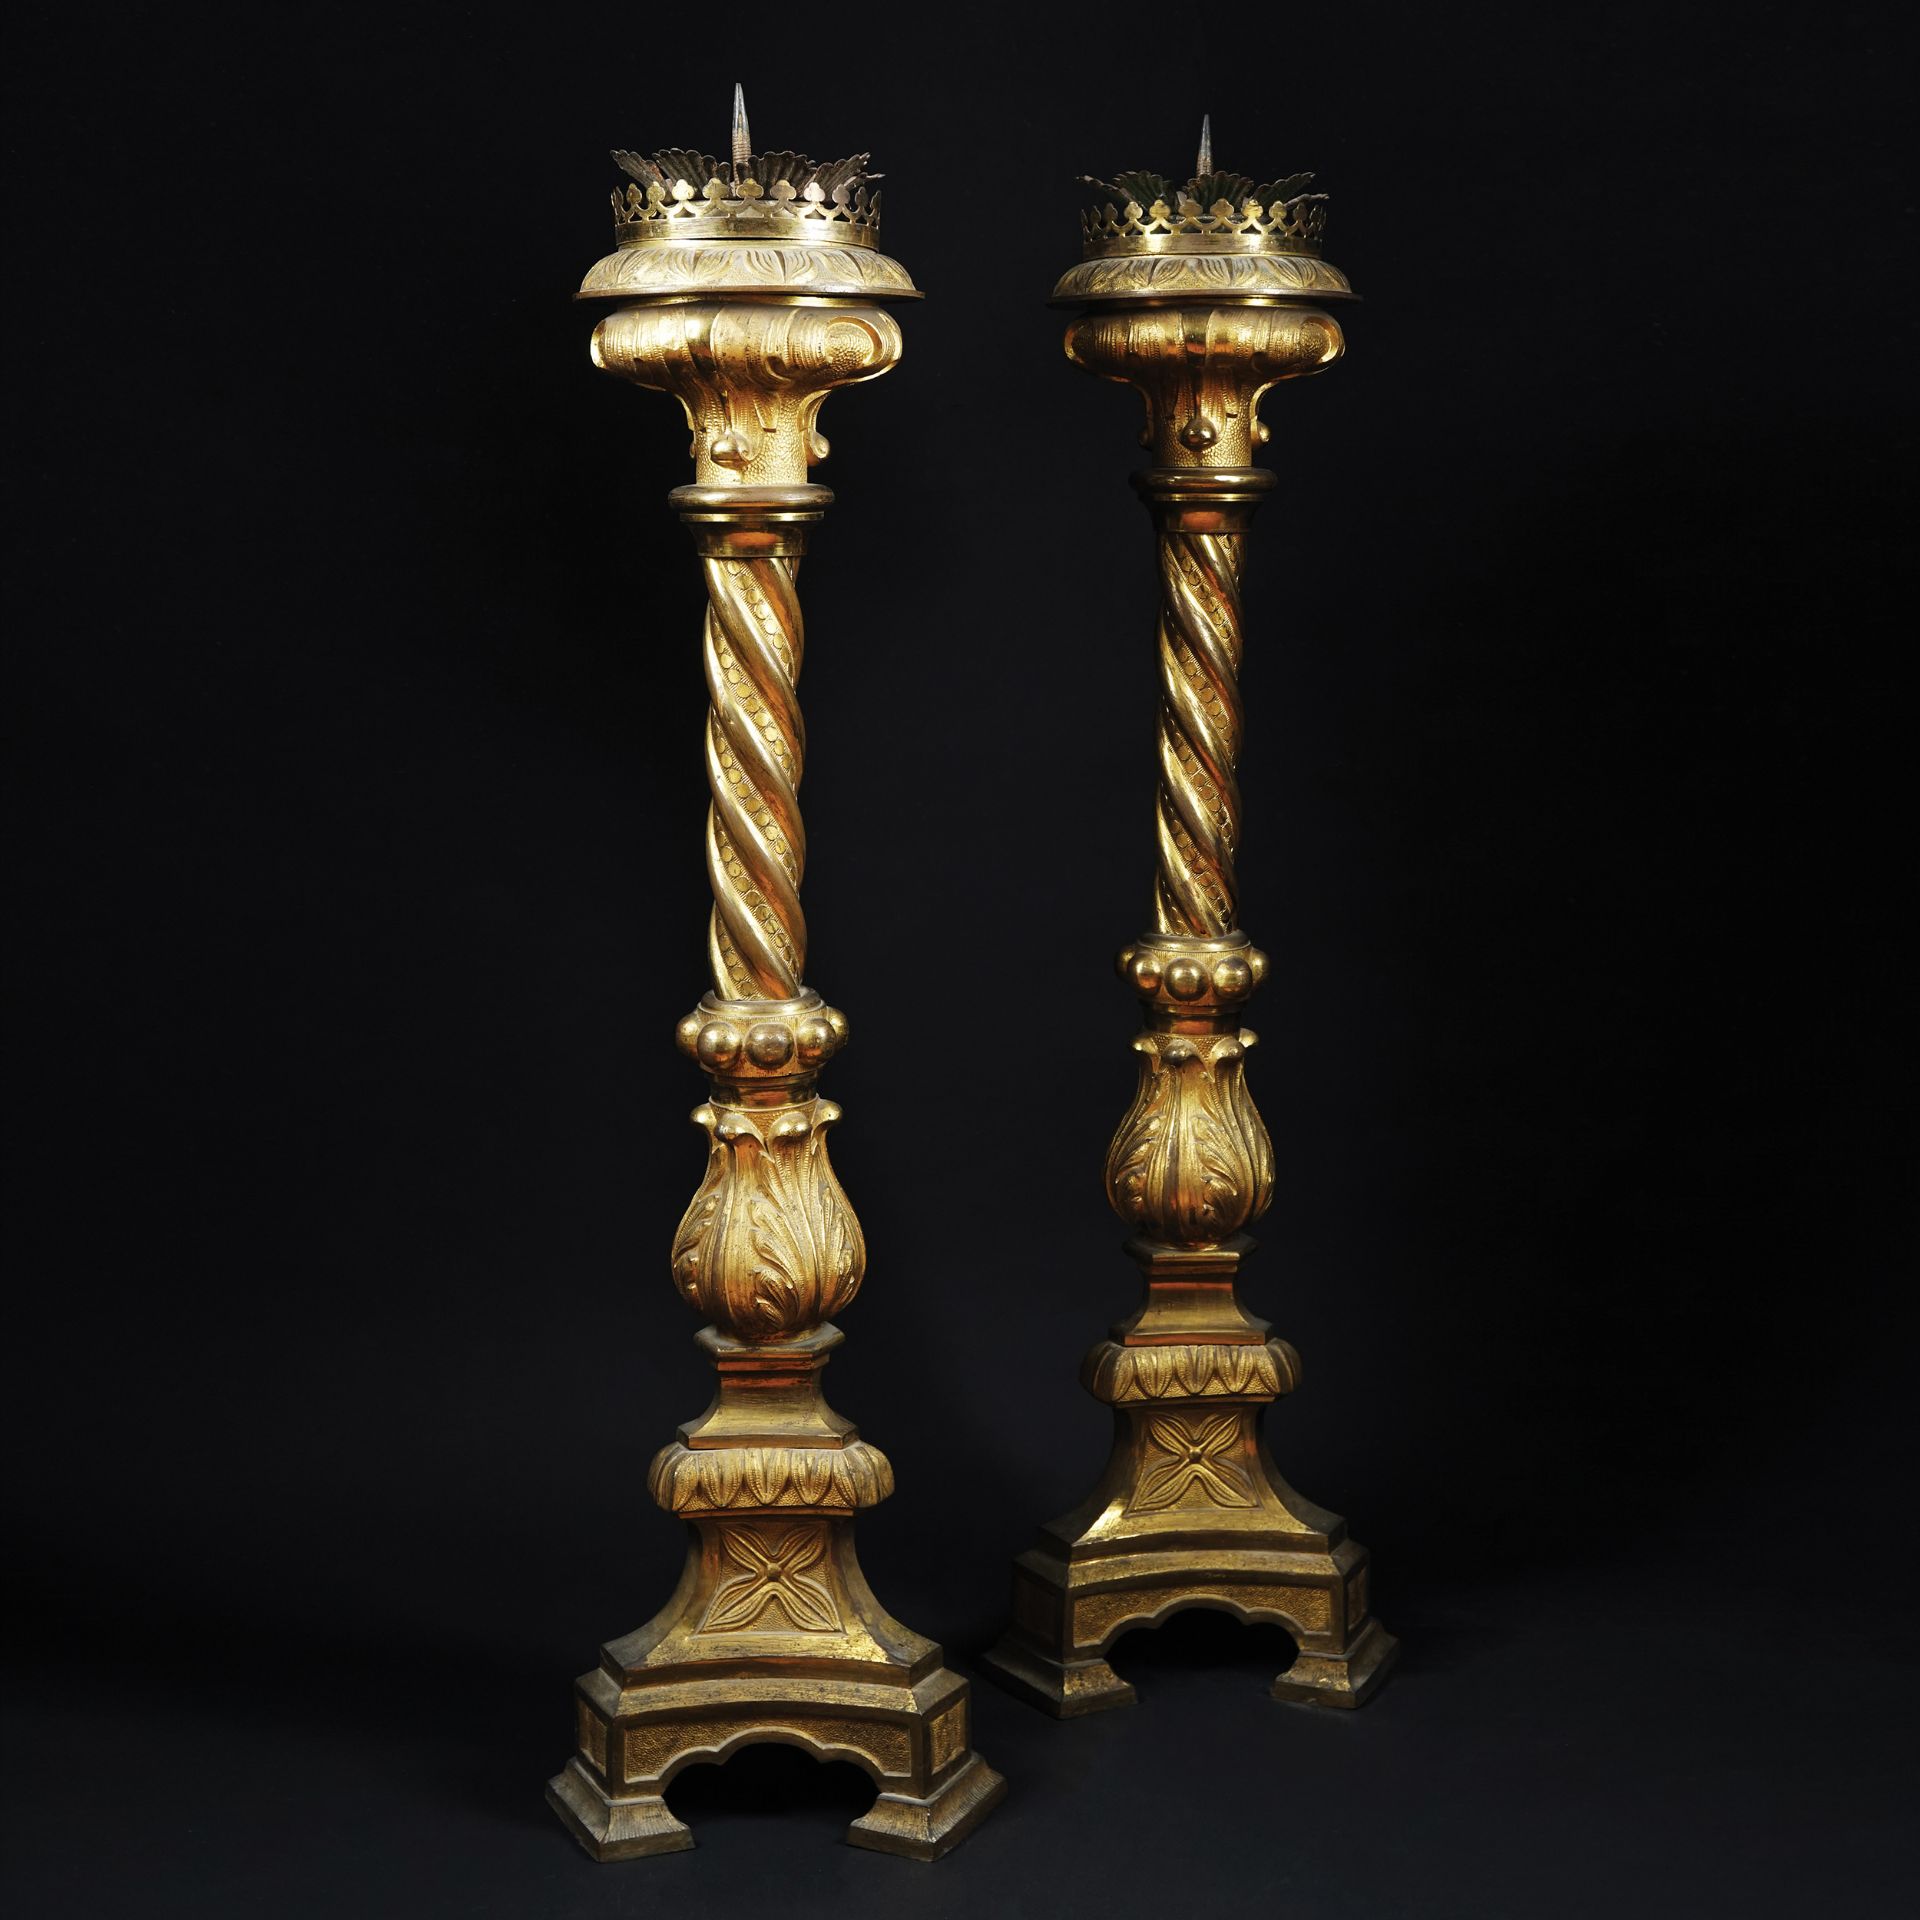 A pair of gilt bronze large candlesticks 104cm. high each